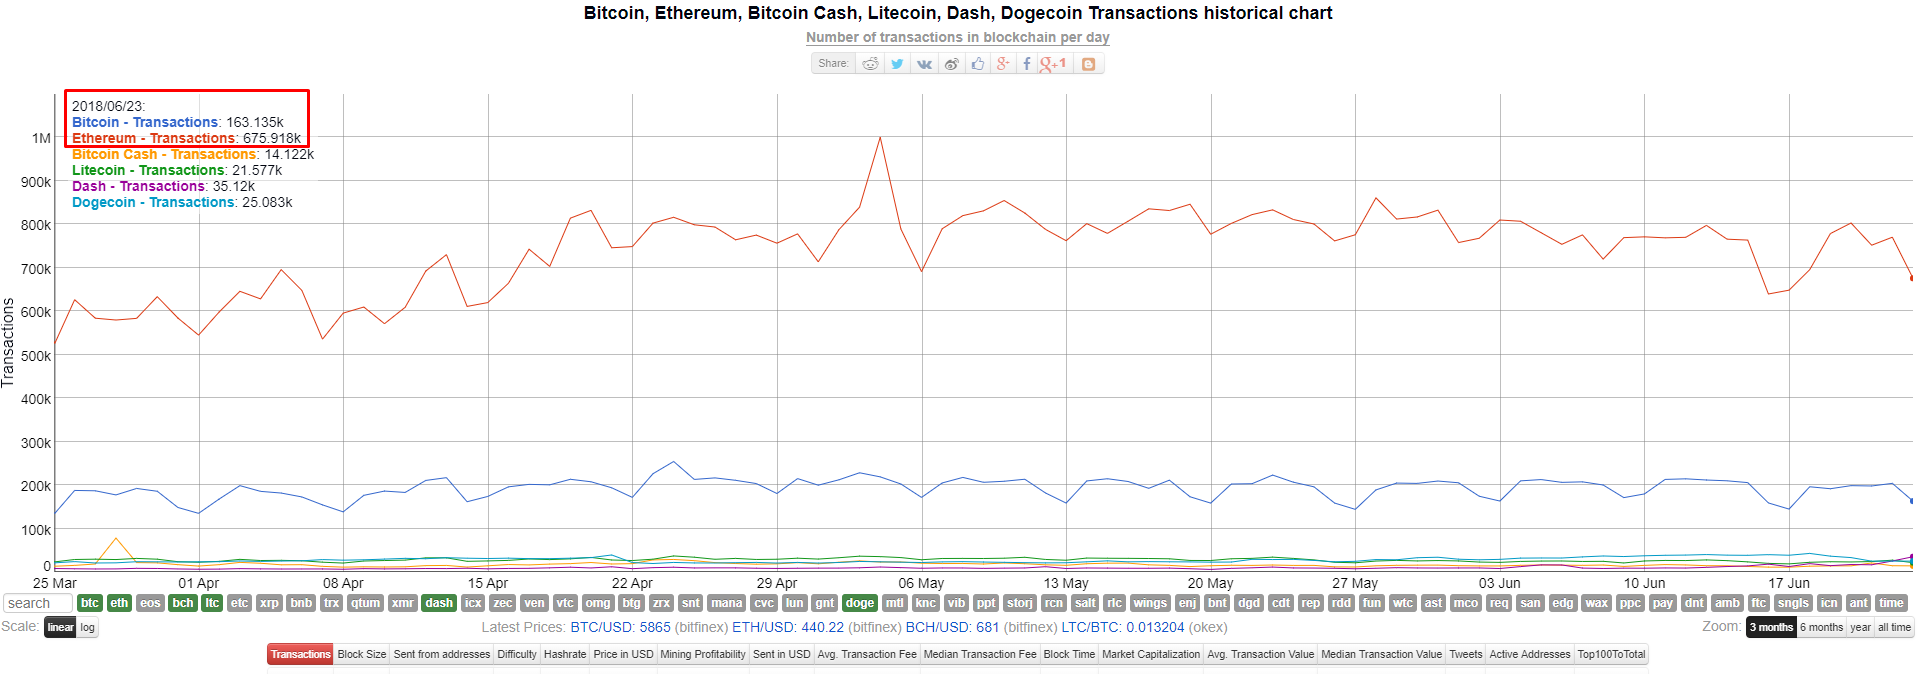 DASH обошла Bitcoin Cash и Litecoin по суточному объему транзакций